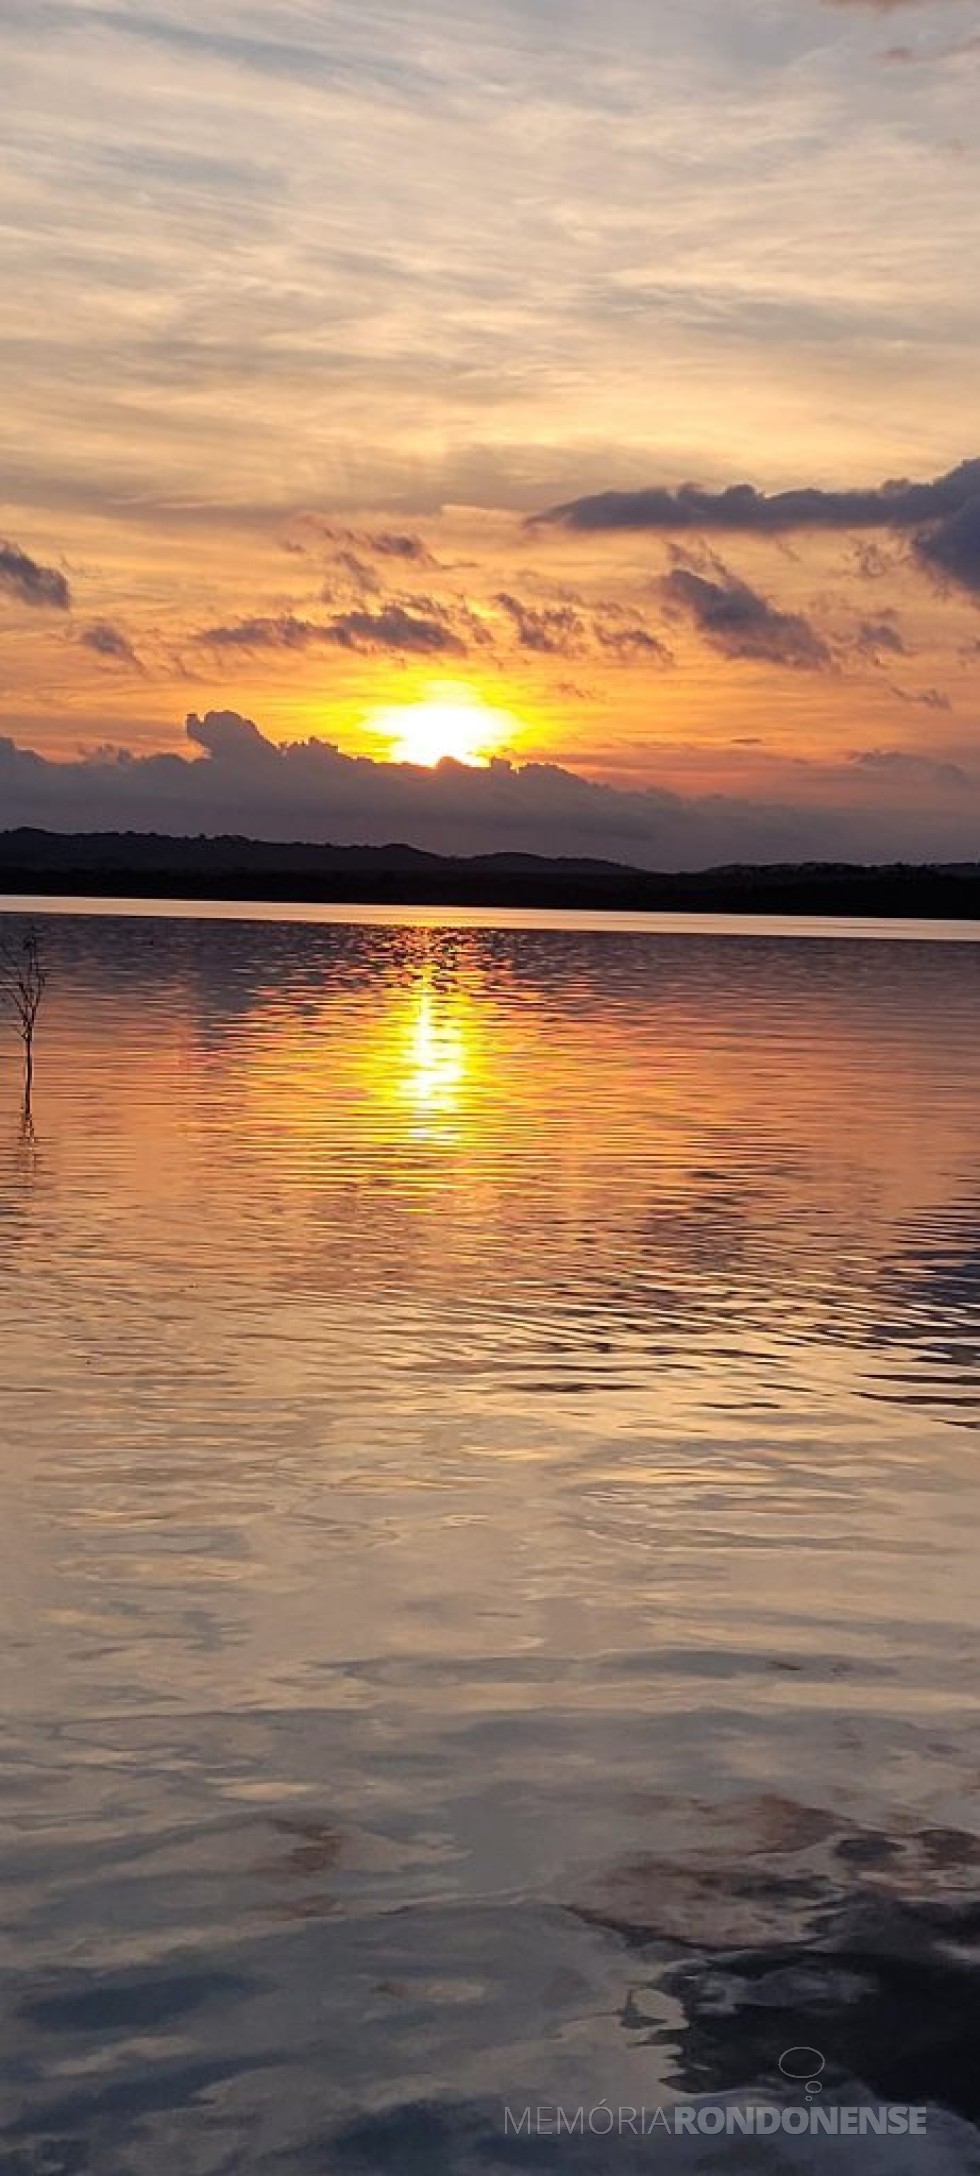 || Pôr-do-sol no município de Marechal Cândido Rondon em 29 de maio de 2023, em imagem clicada pela pioneira rondonense Ilda Bet a partir do Lago de Itaipu, no distrito rondonense de Porto Mendes - FOTO 11 -